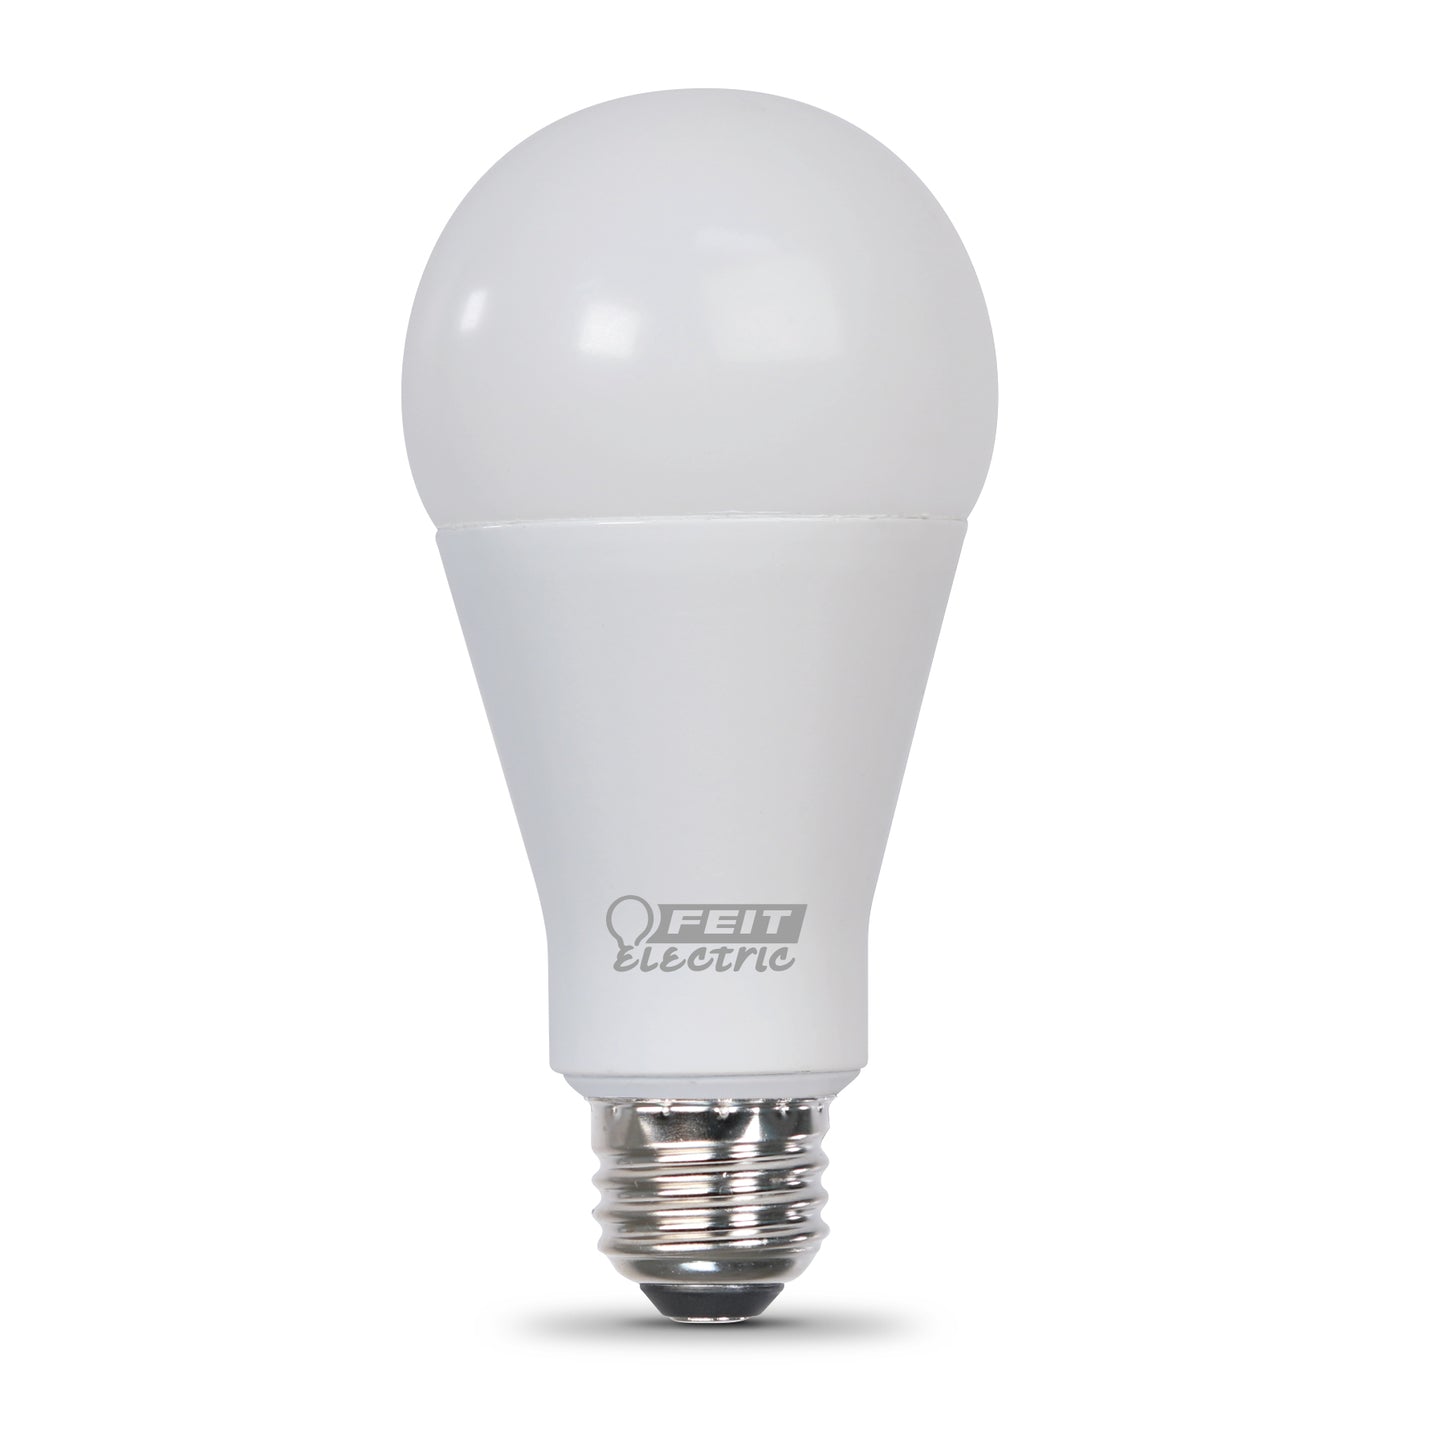 Feit Electric OM300/850/LED high-lumen LED light bulb. This 5000K Daylight bulb